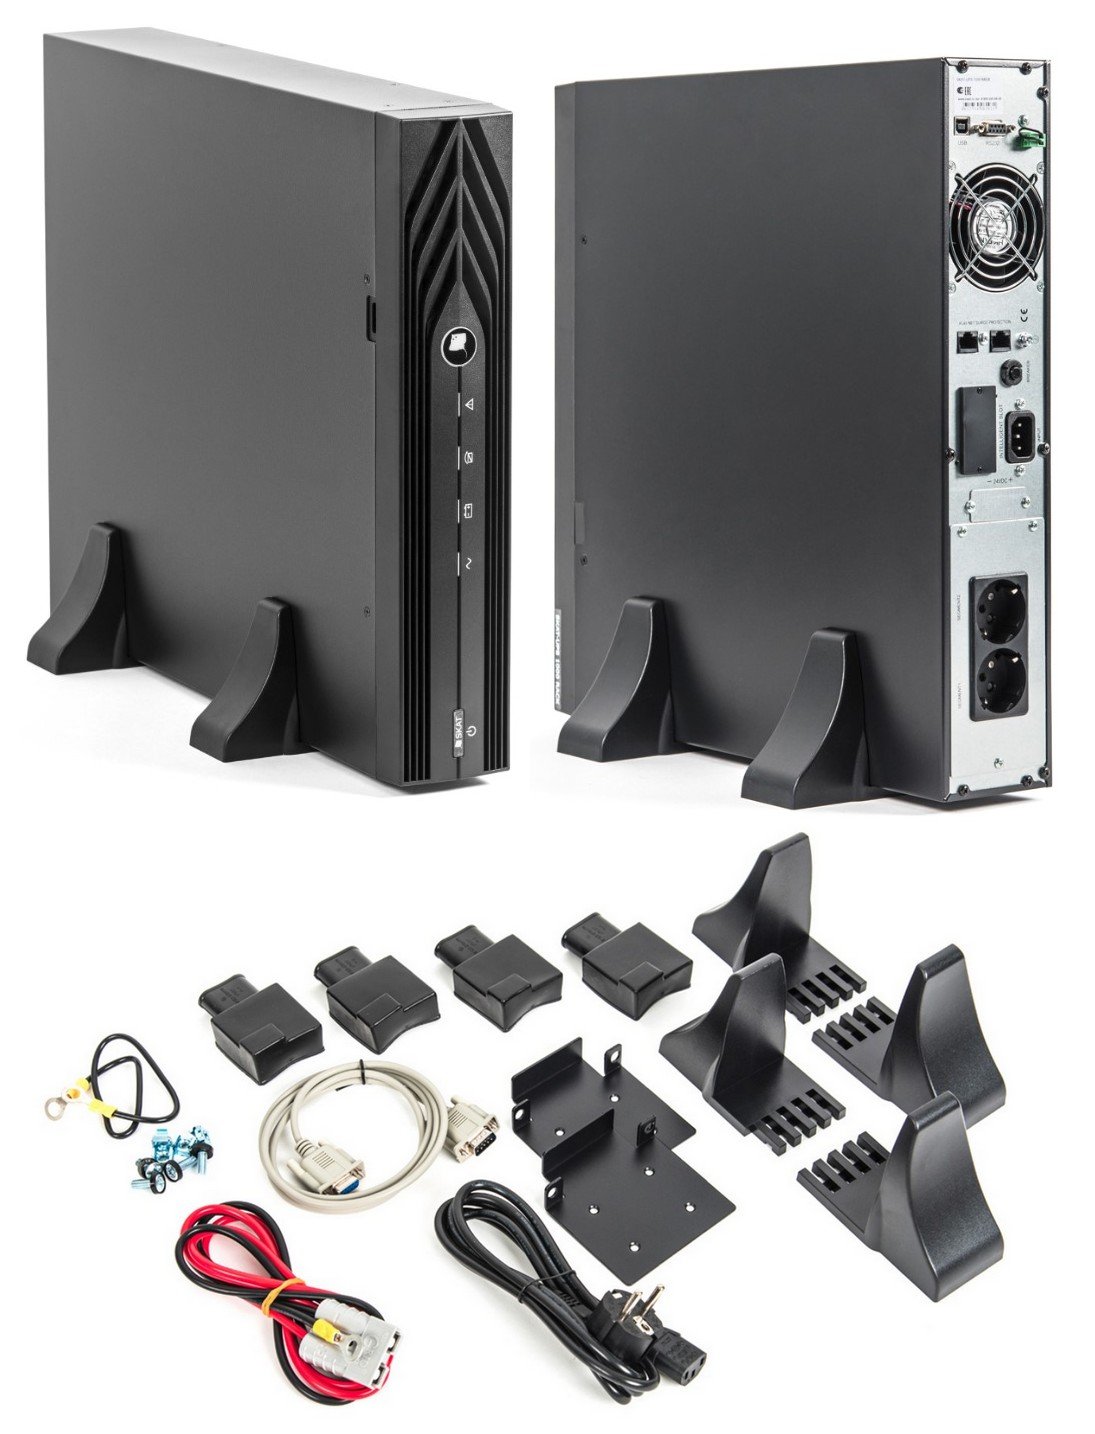 Все Бастион SKAT-UPS 1000 RACK источник бесперебойного питания видеонаблюдения в магазине Vidos Group